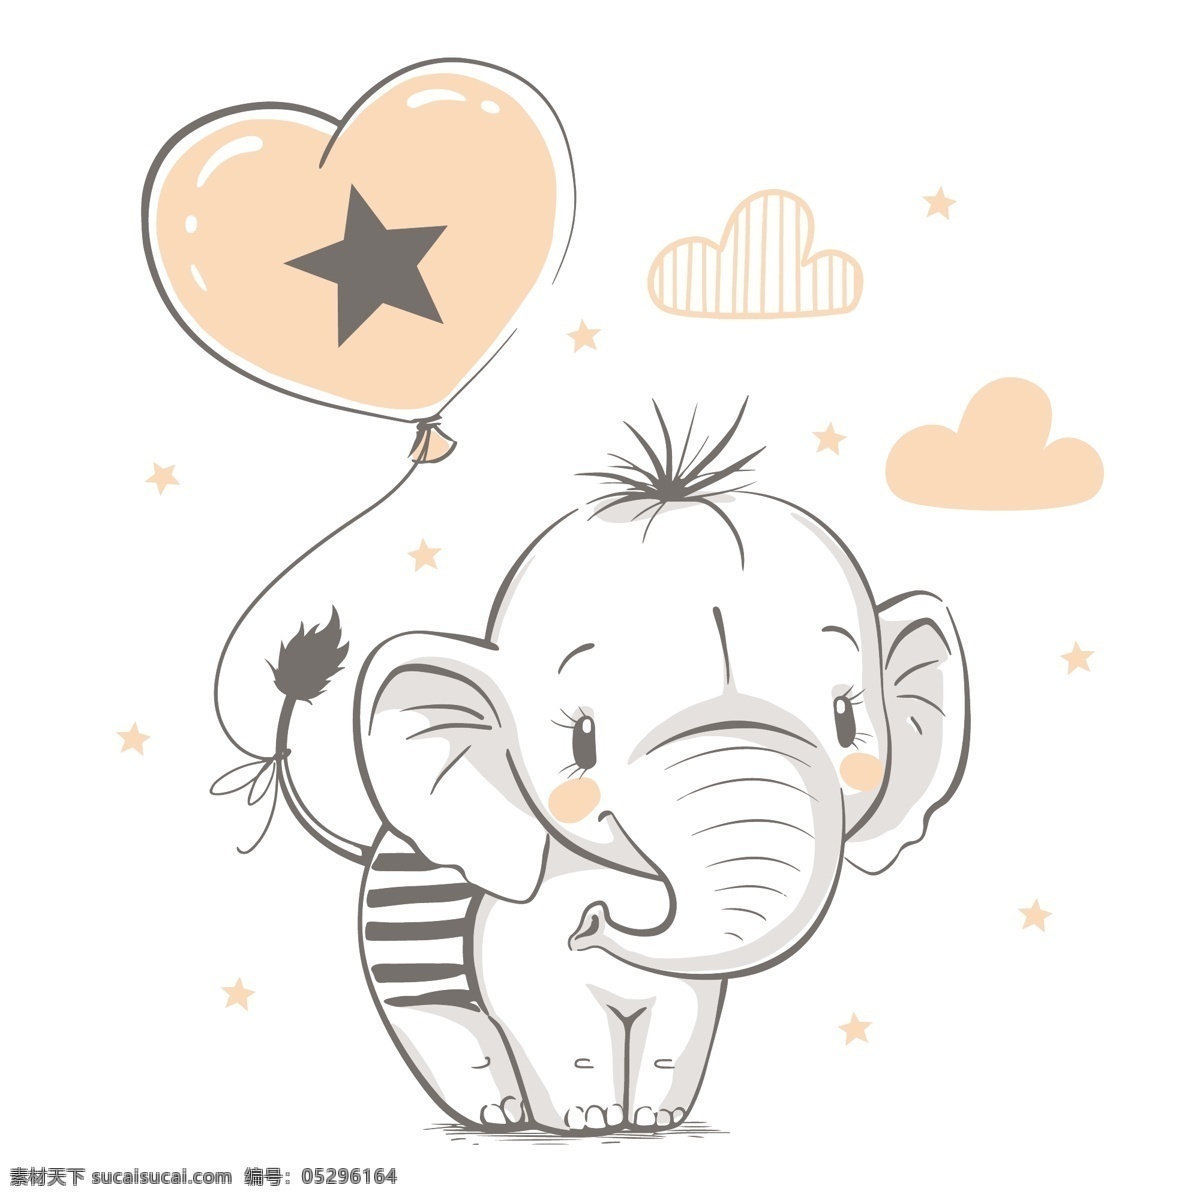 卡通手绘大象 大象 手绘 婴儿素材 淡彩 清新 卡通动物 可爱 小象 卡通设计